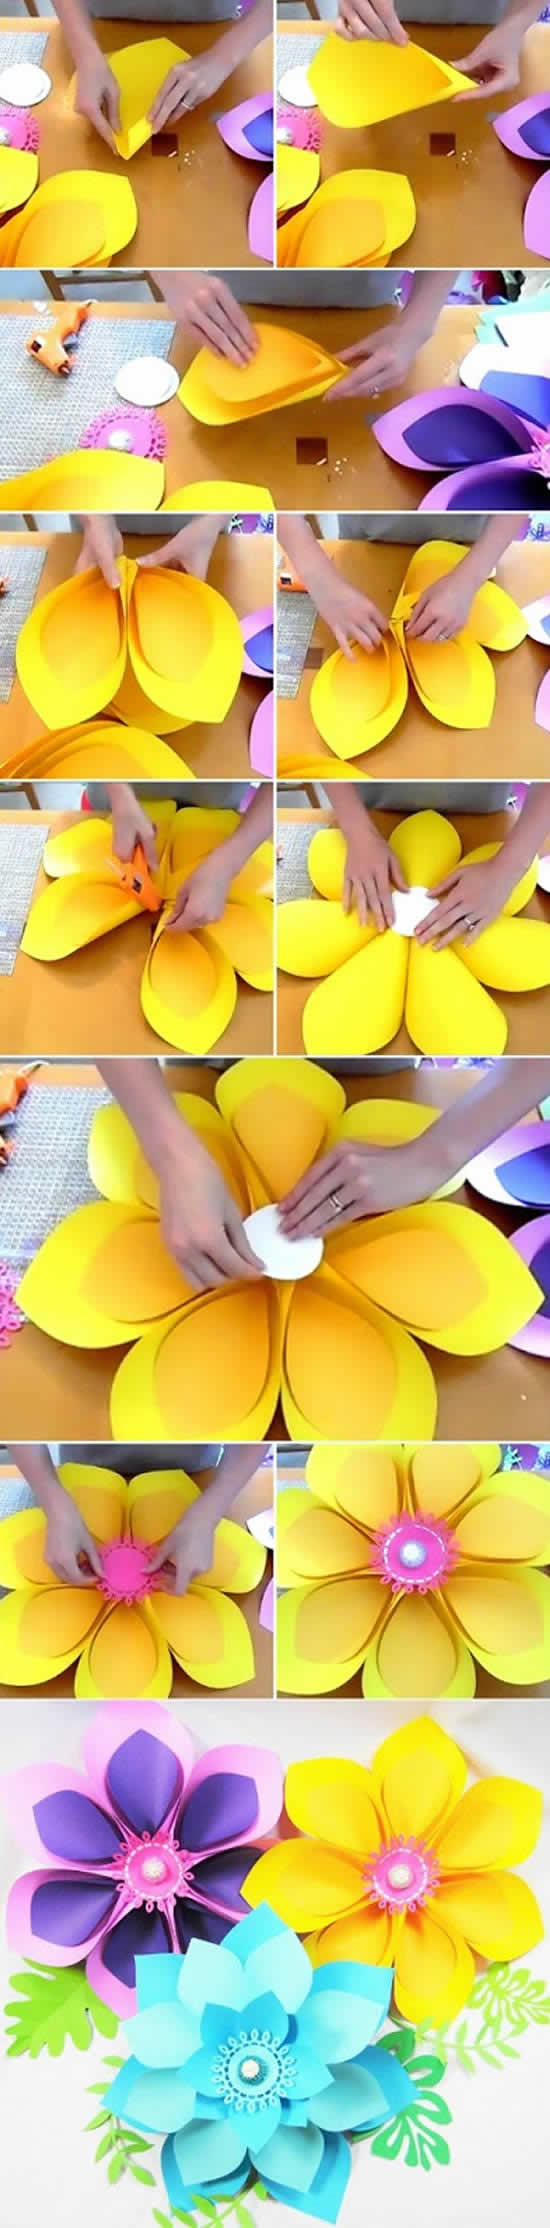 Décoration avec des fleurs en papier - Moules faciles